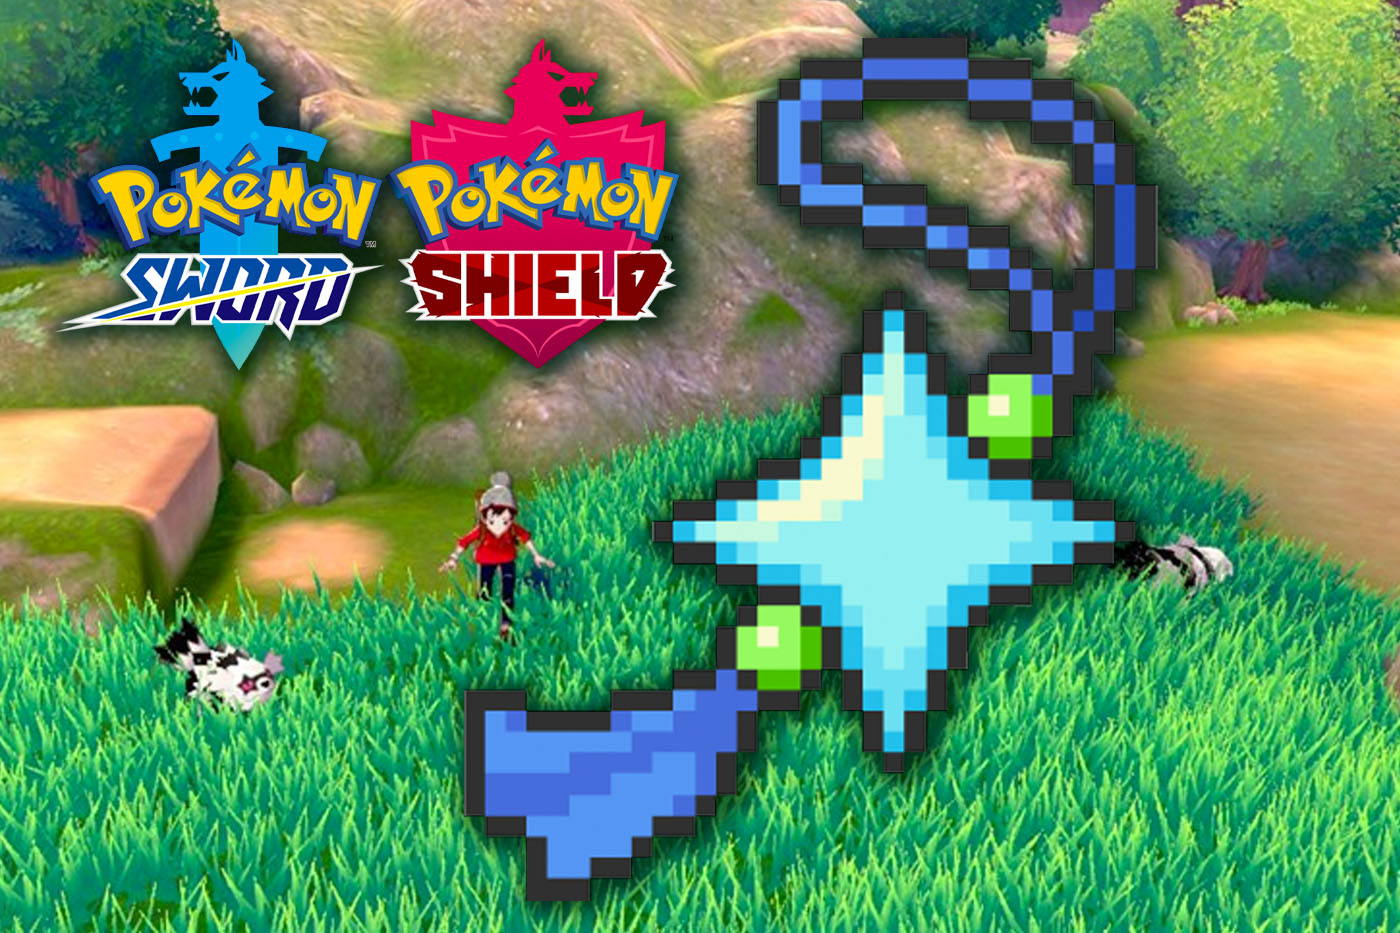 6IV Ultra Shiny Avalugg Pokemon Sword and Shield Square Shiny